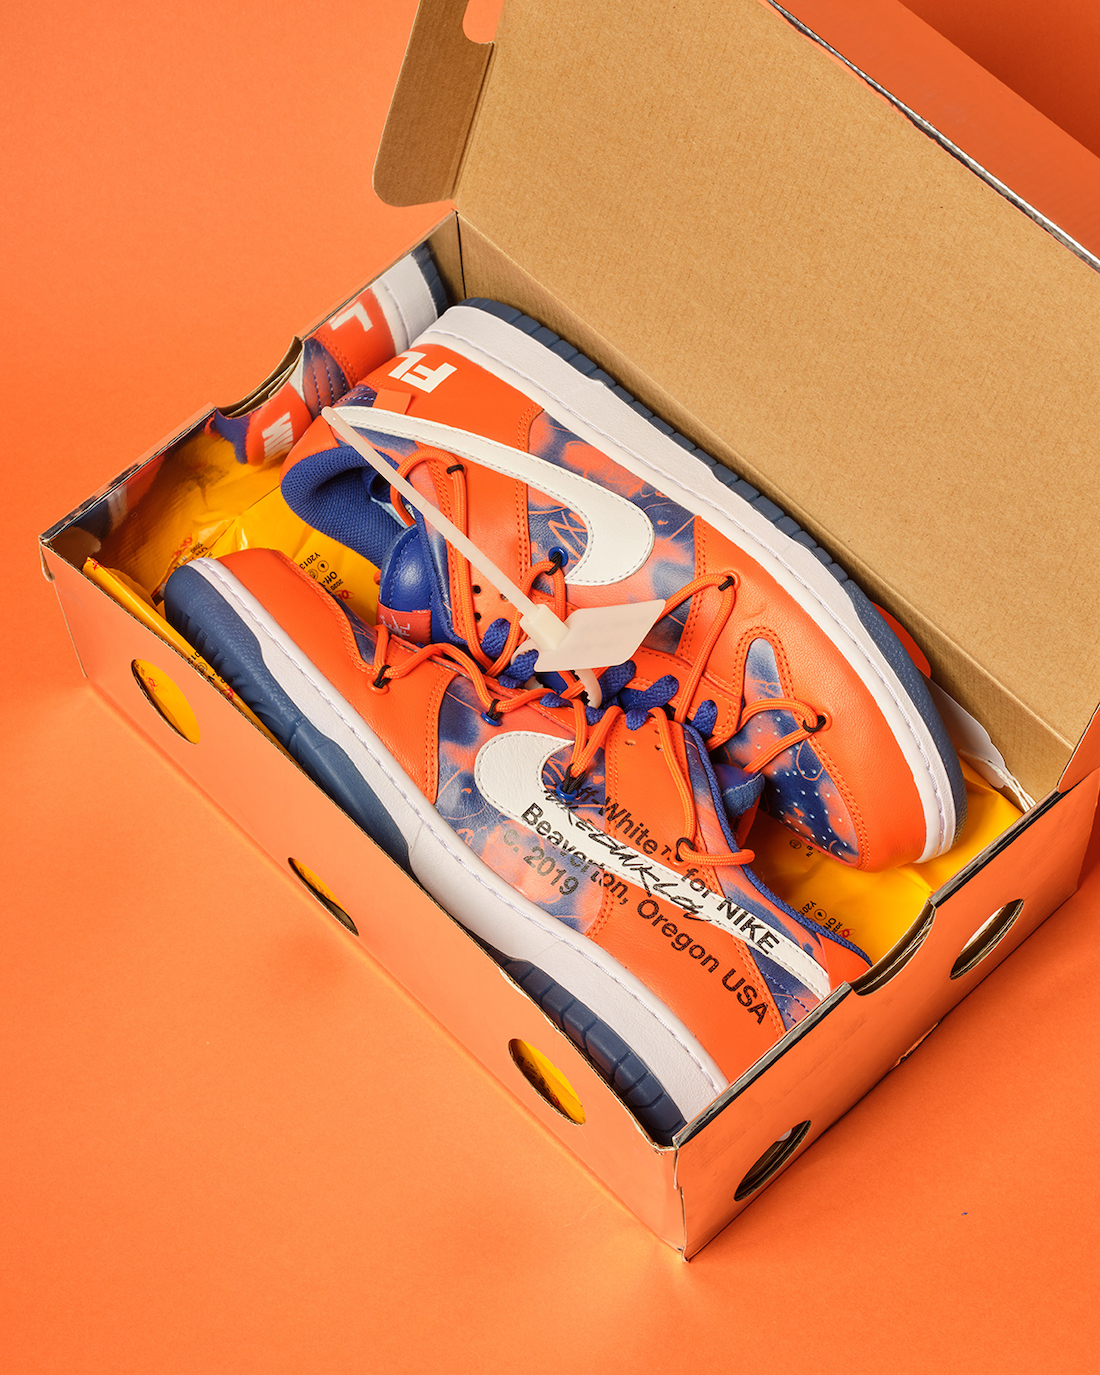 Off-White Futura Nike Dunk Low Orange Auction